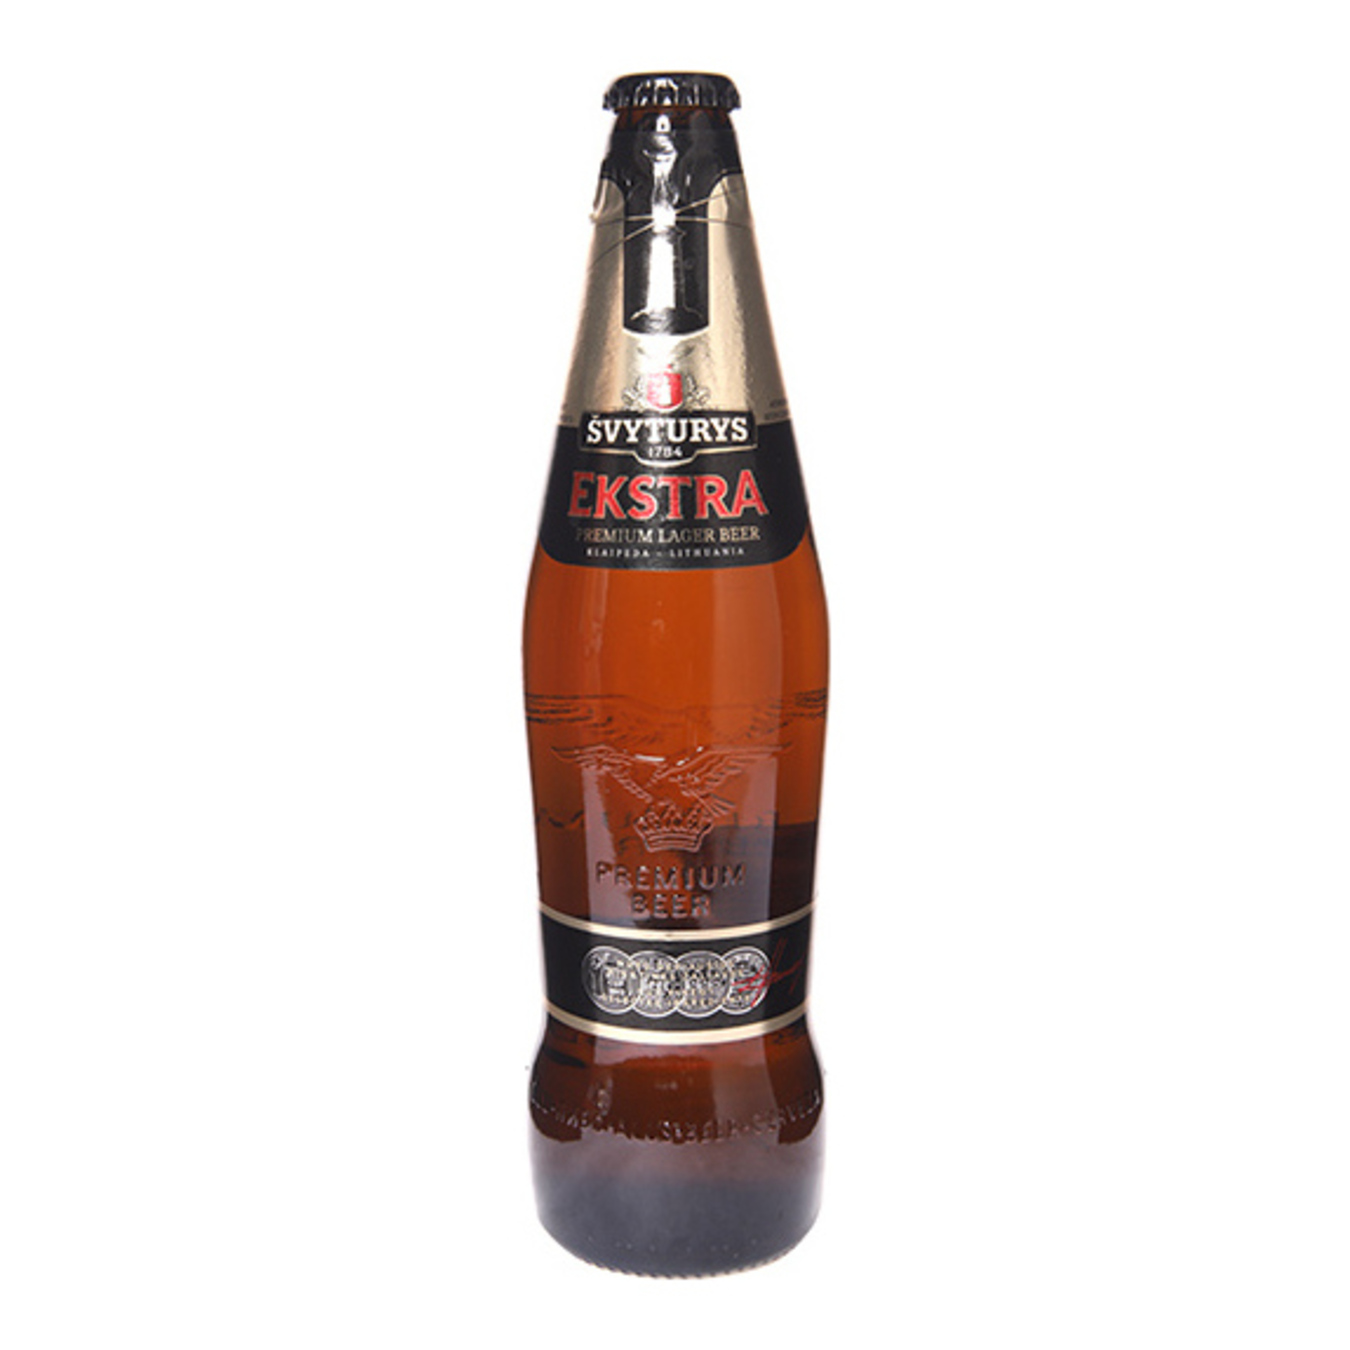 Пиво Svyturys Ekstra светлое 5,2% 0,5л